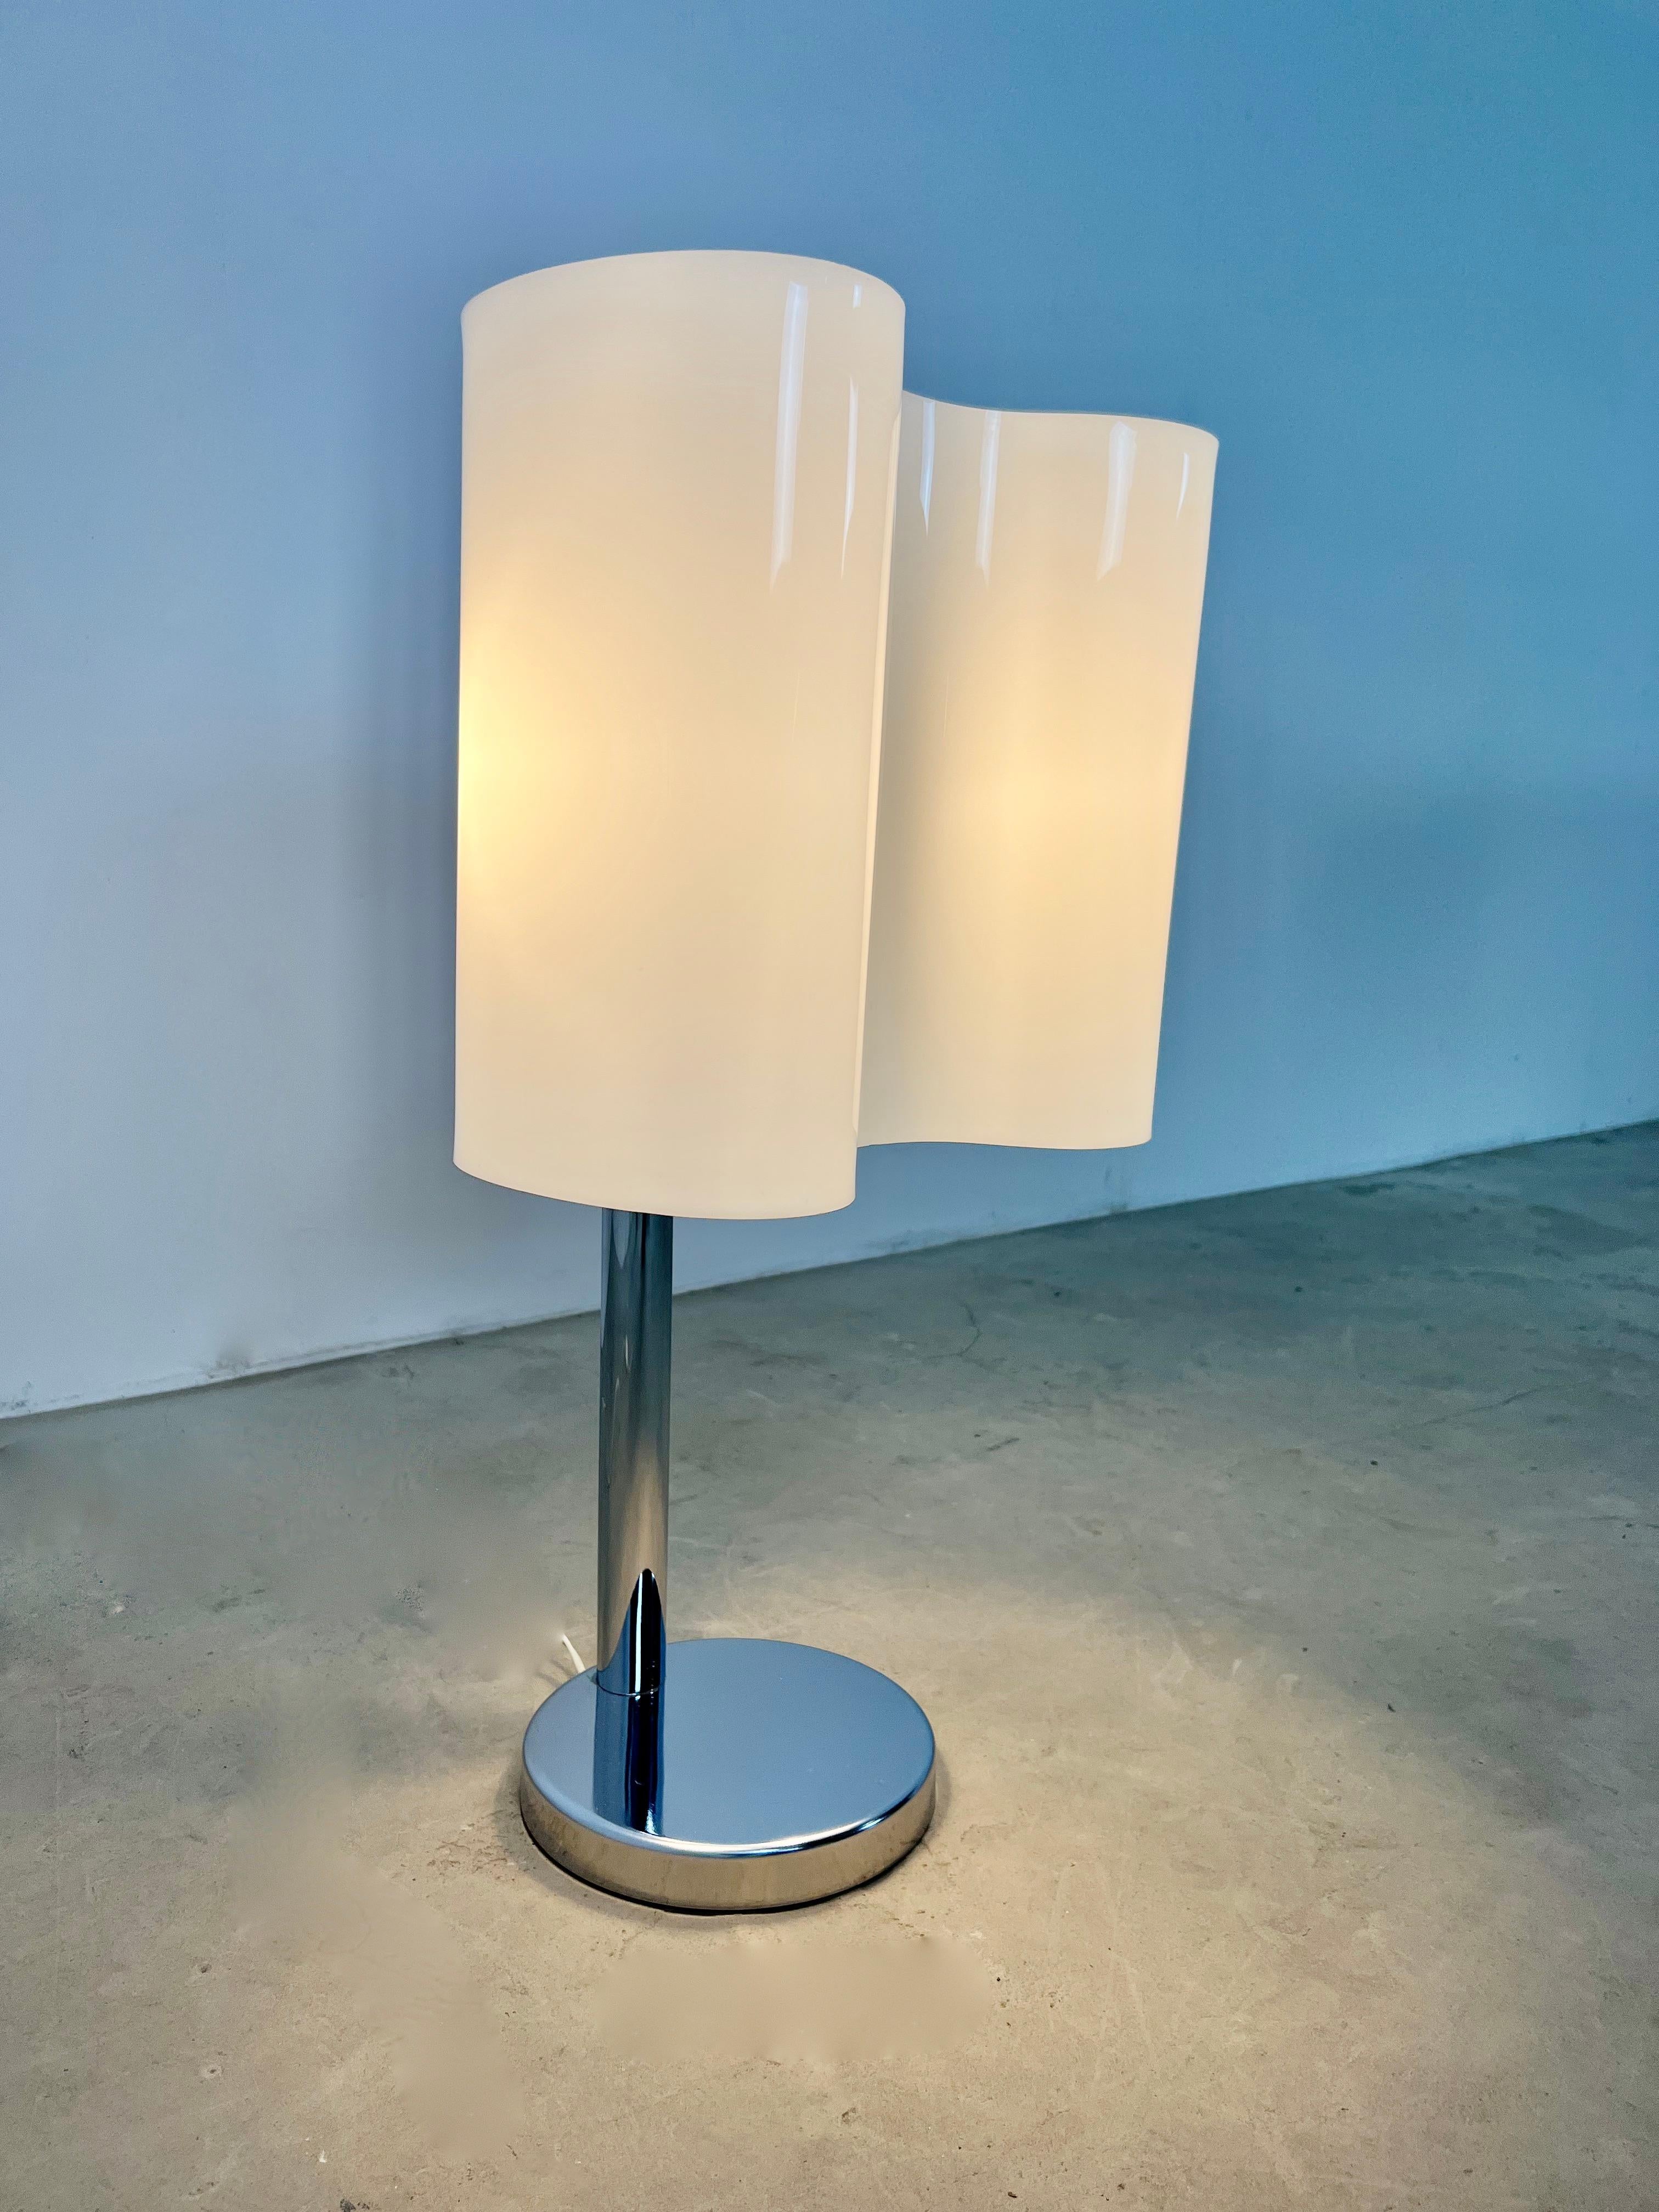 Lampe en métal et plastique de couleur blanche. Usure due au temps et à l'âge de la lampe. Une petite tache à l'intérieur (voir photo).